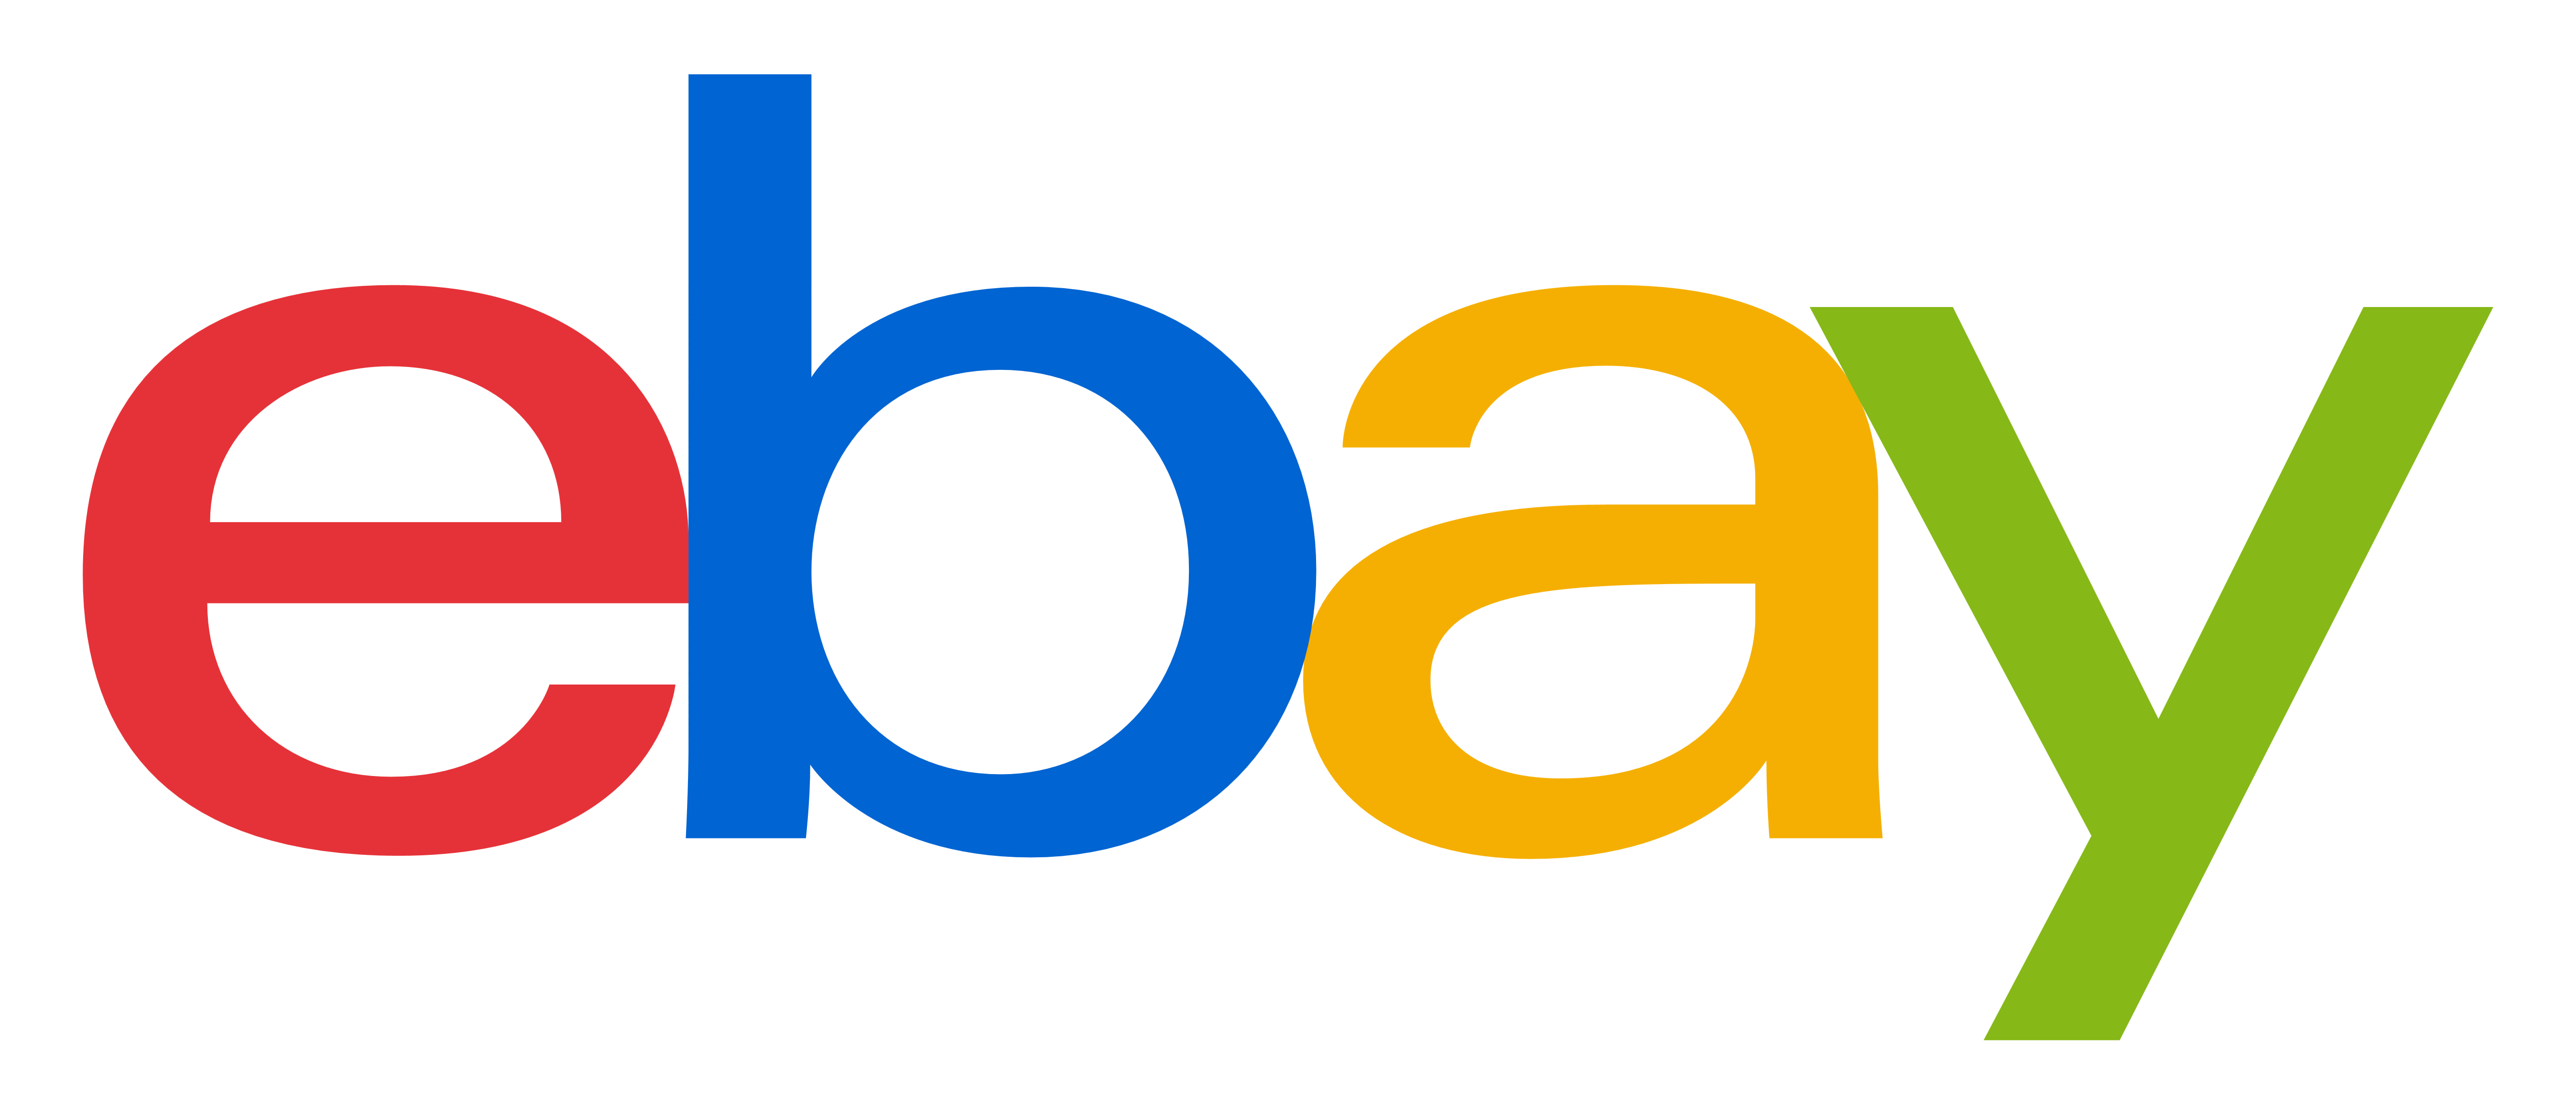 ebay logo الصور الشفافة